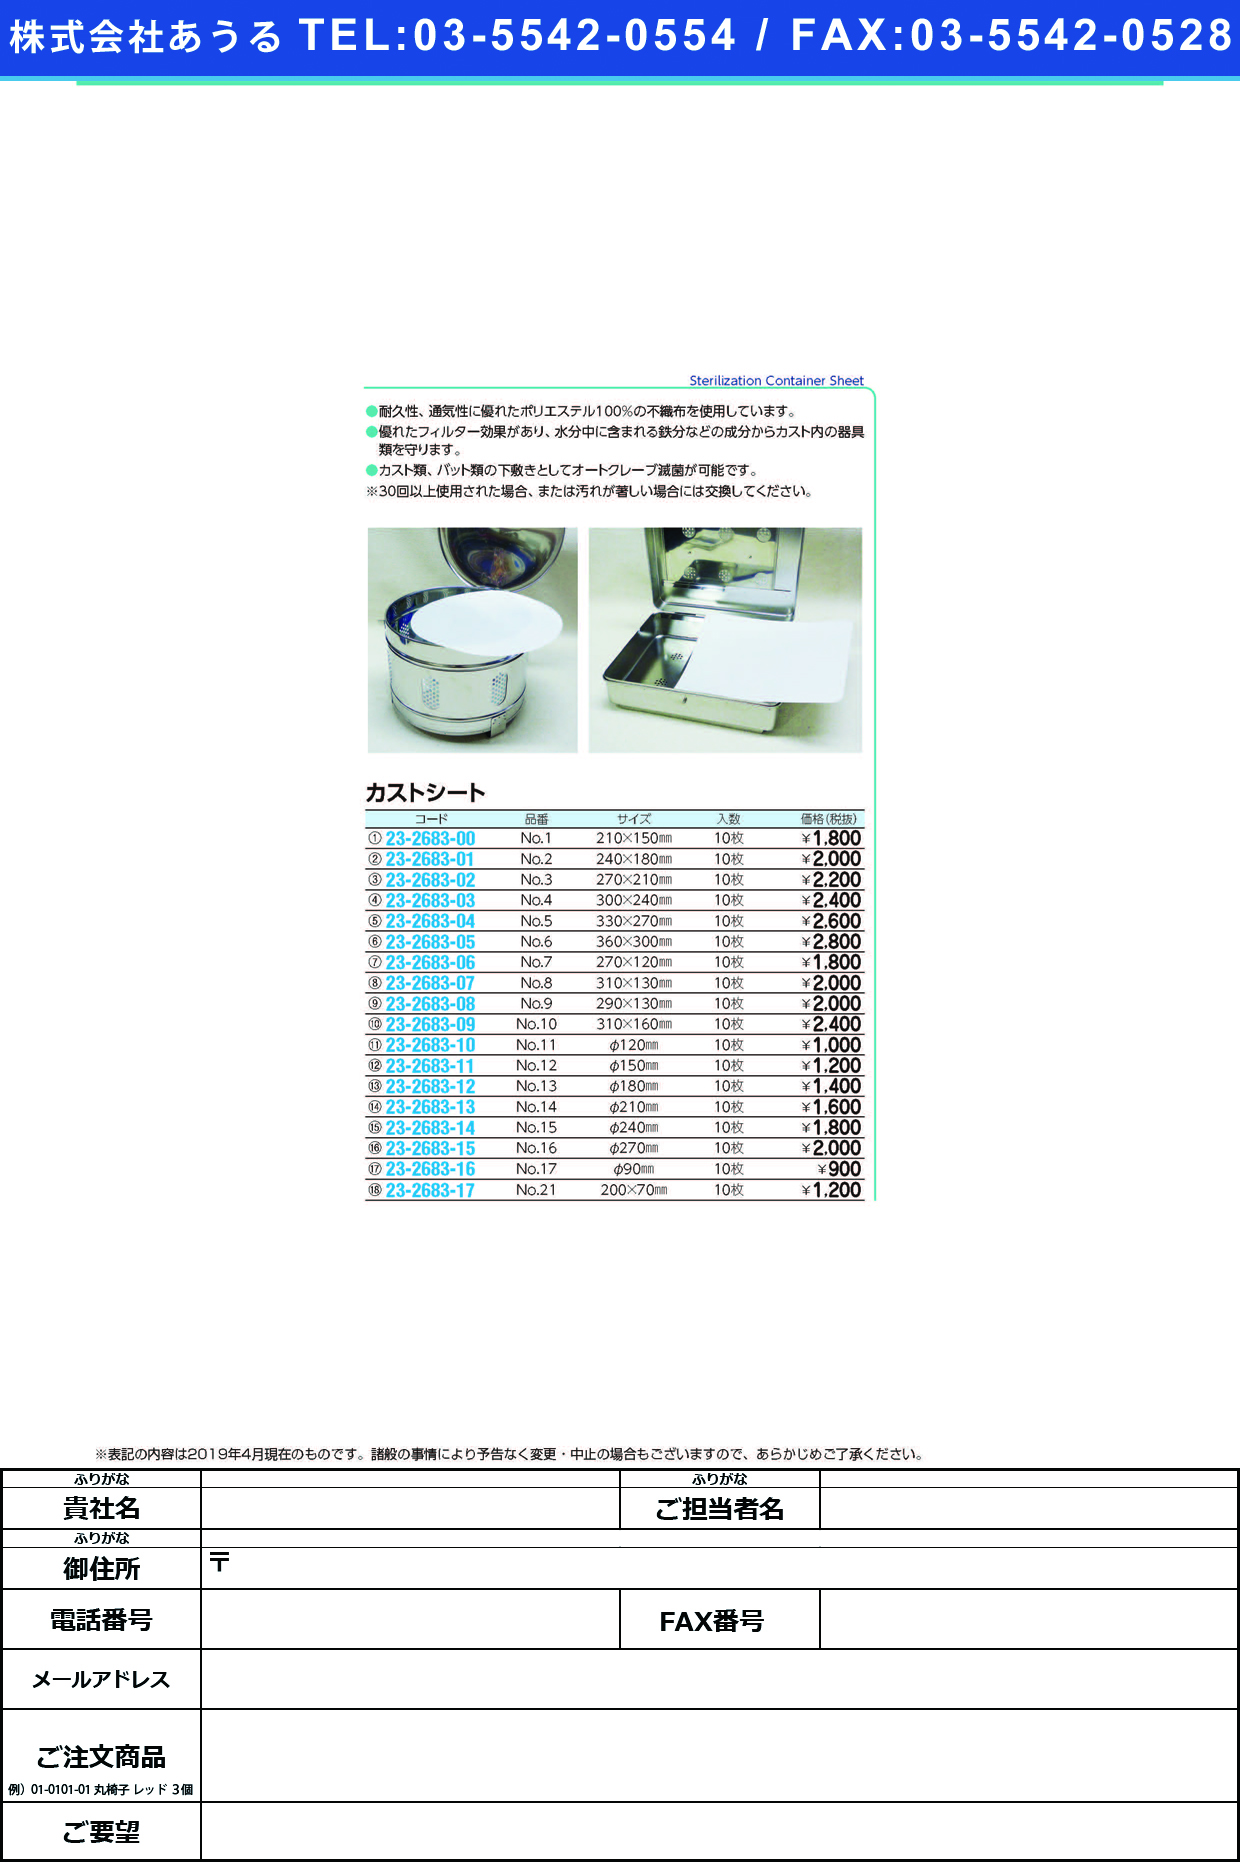 (23-2683-10)カストシート NO.11(12CMﾖｳ)10ｲﾘ ｶｽﾄｼｰﾄ【1袋単位】【2019年カタログ商品】